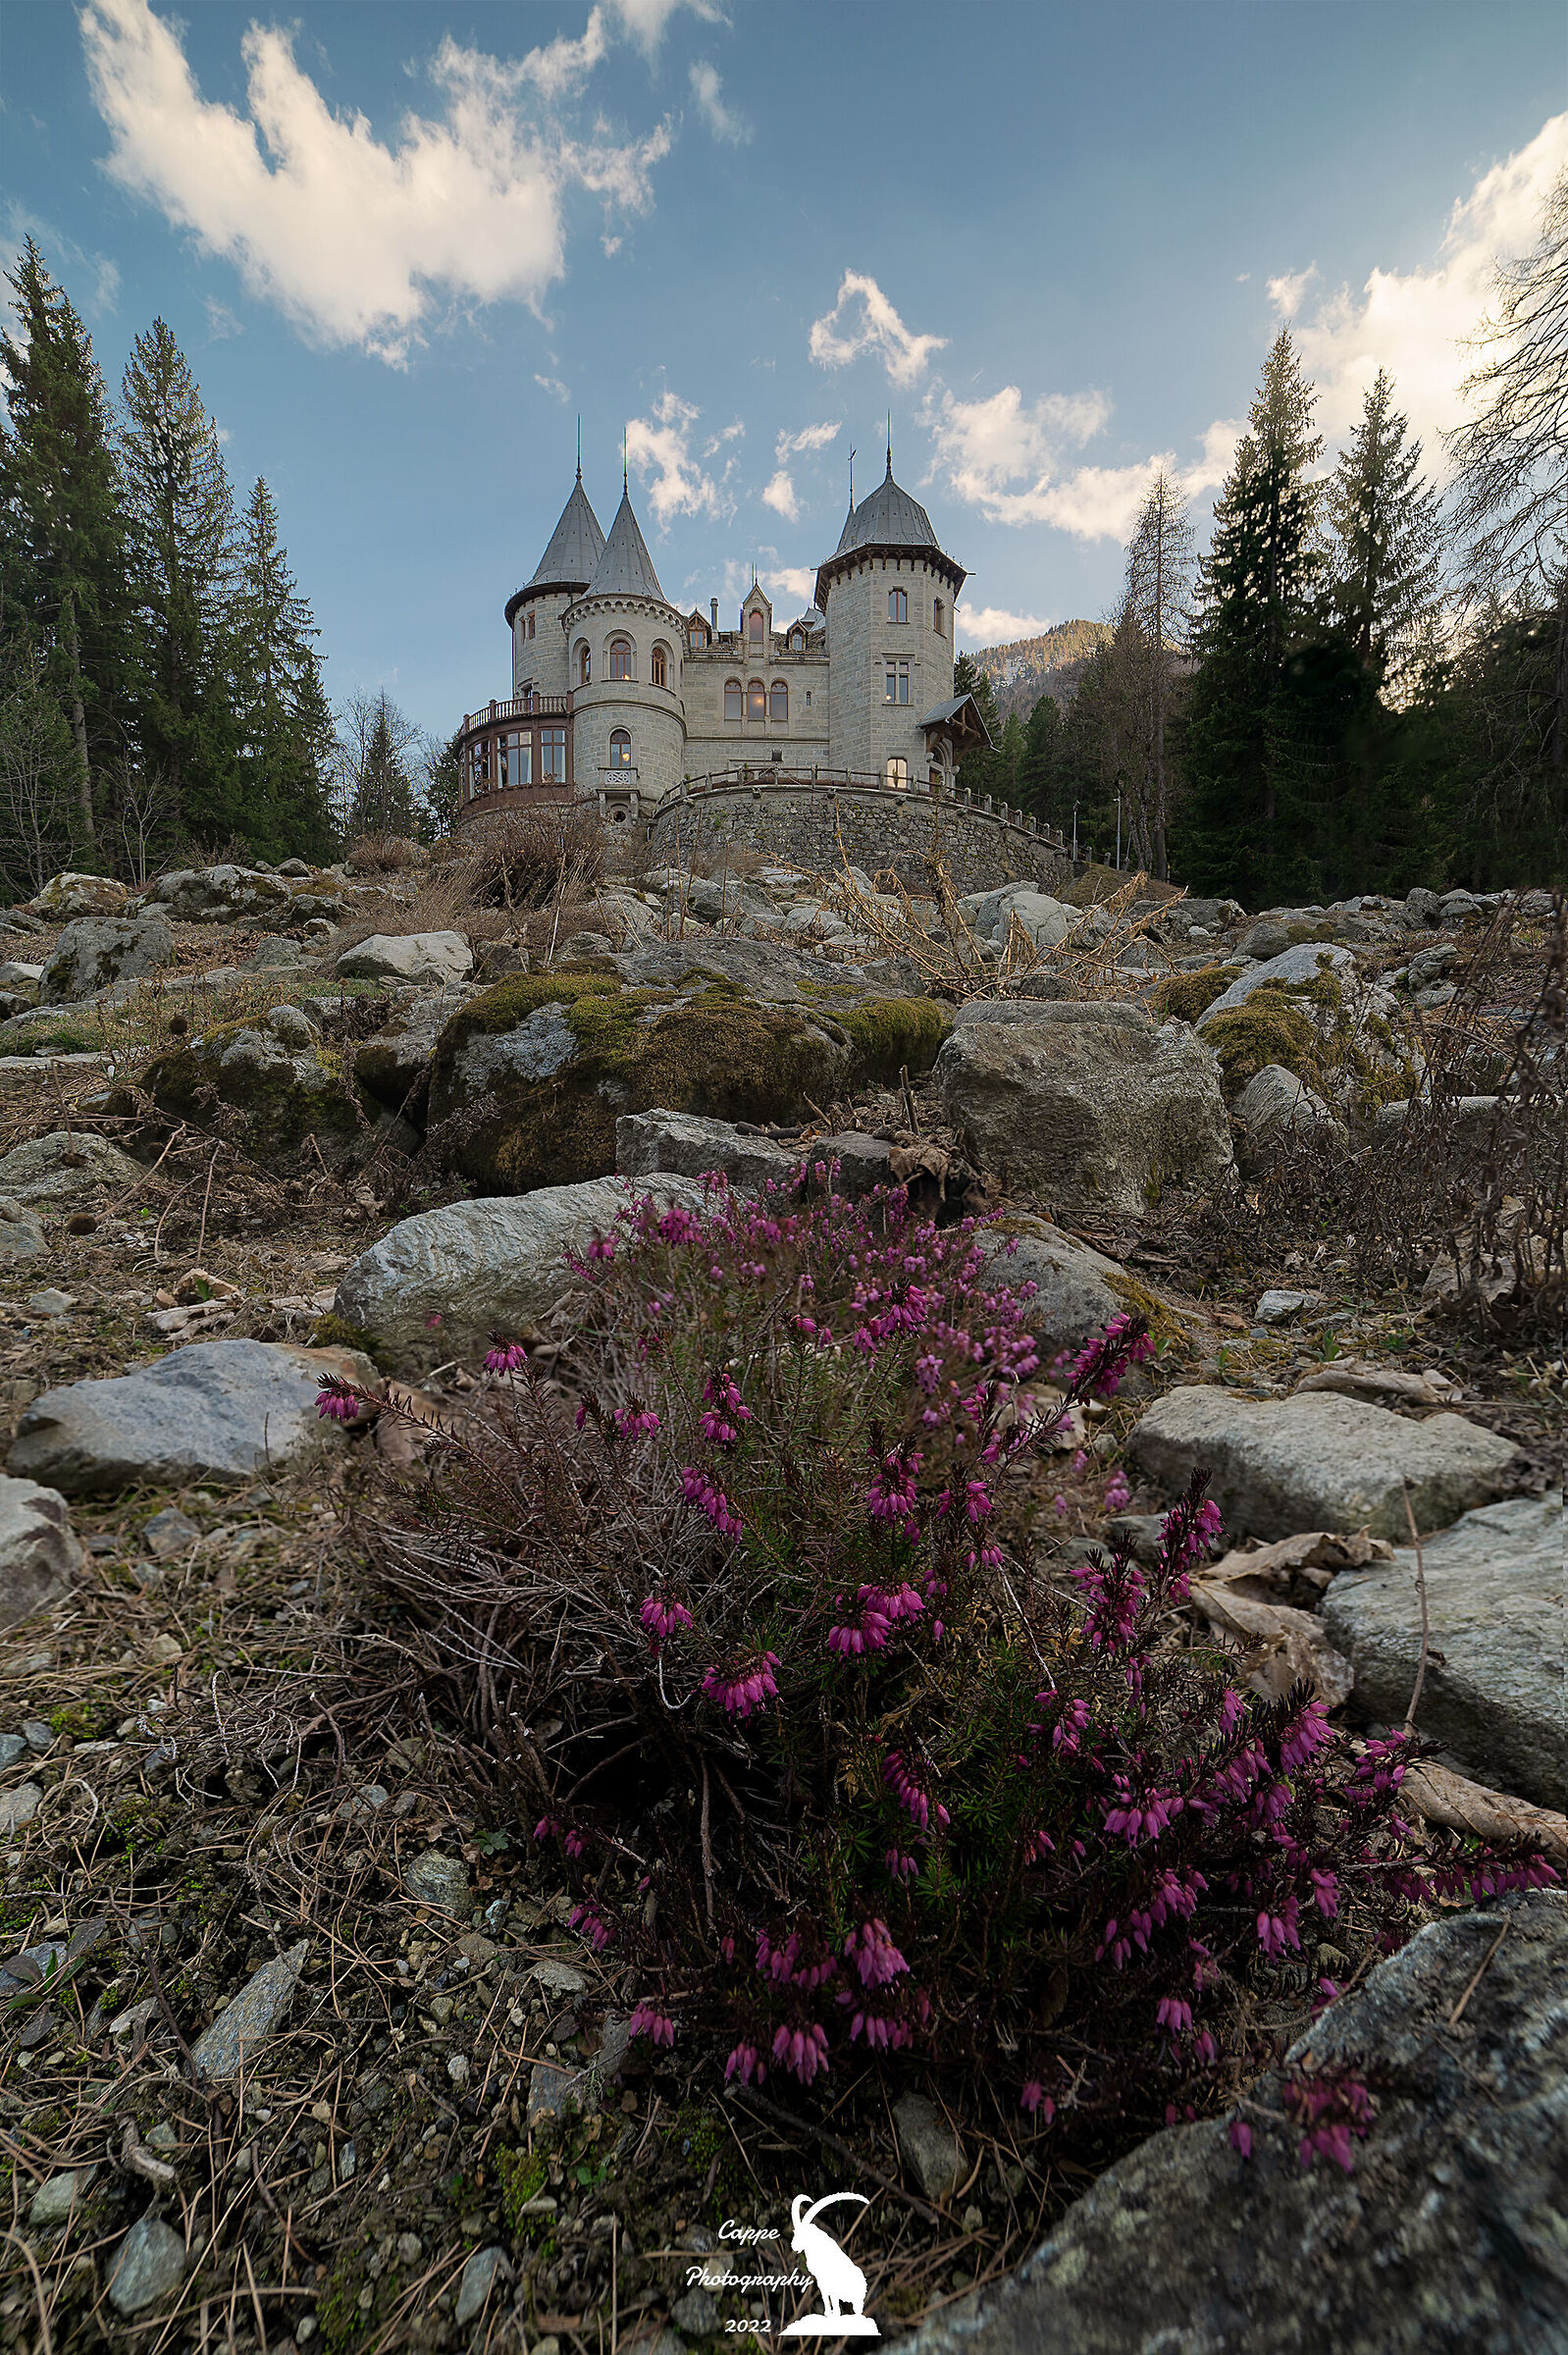 A fairytale castle...